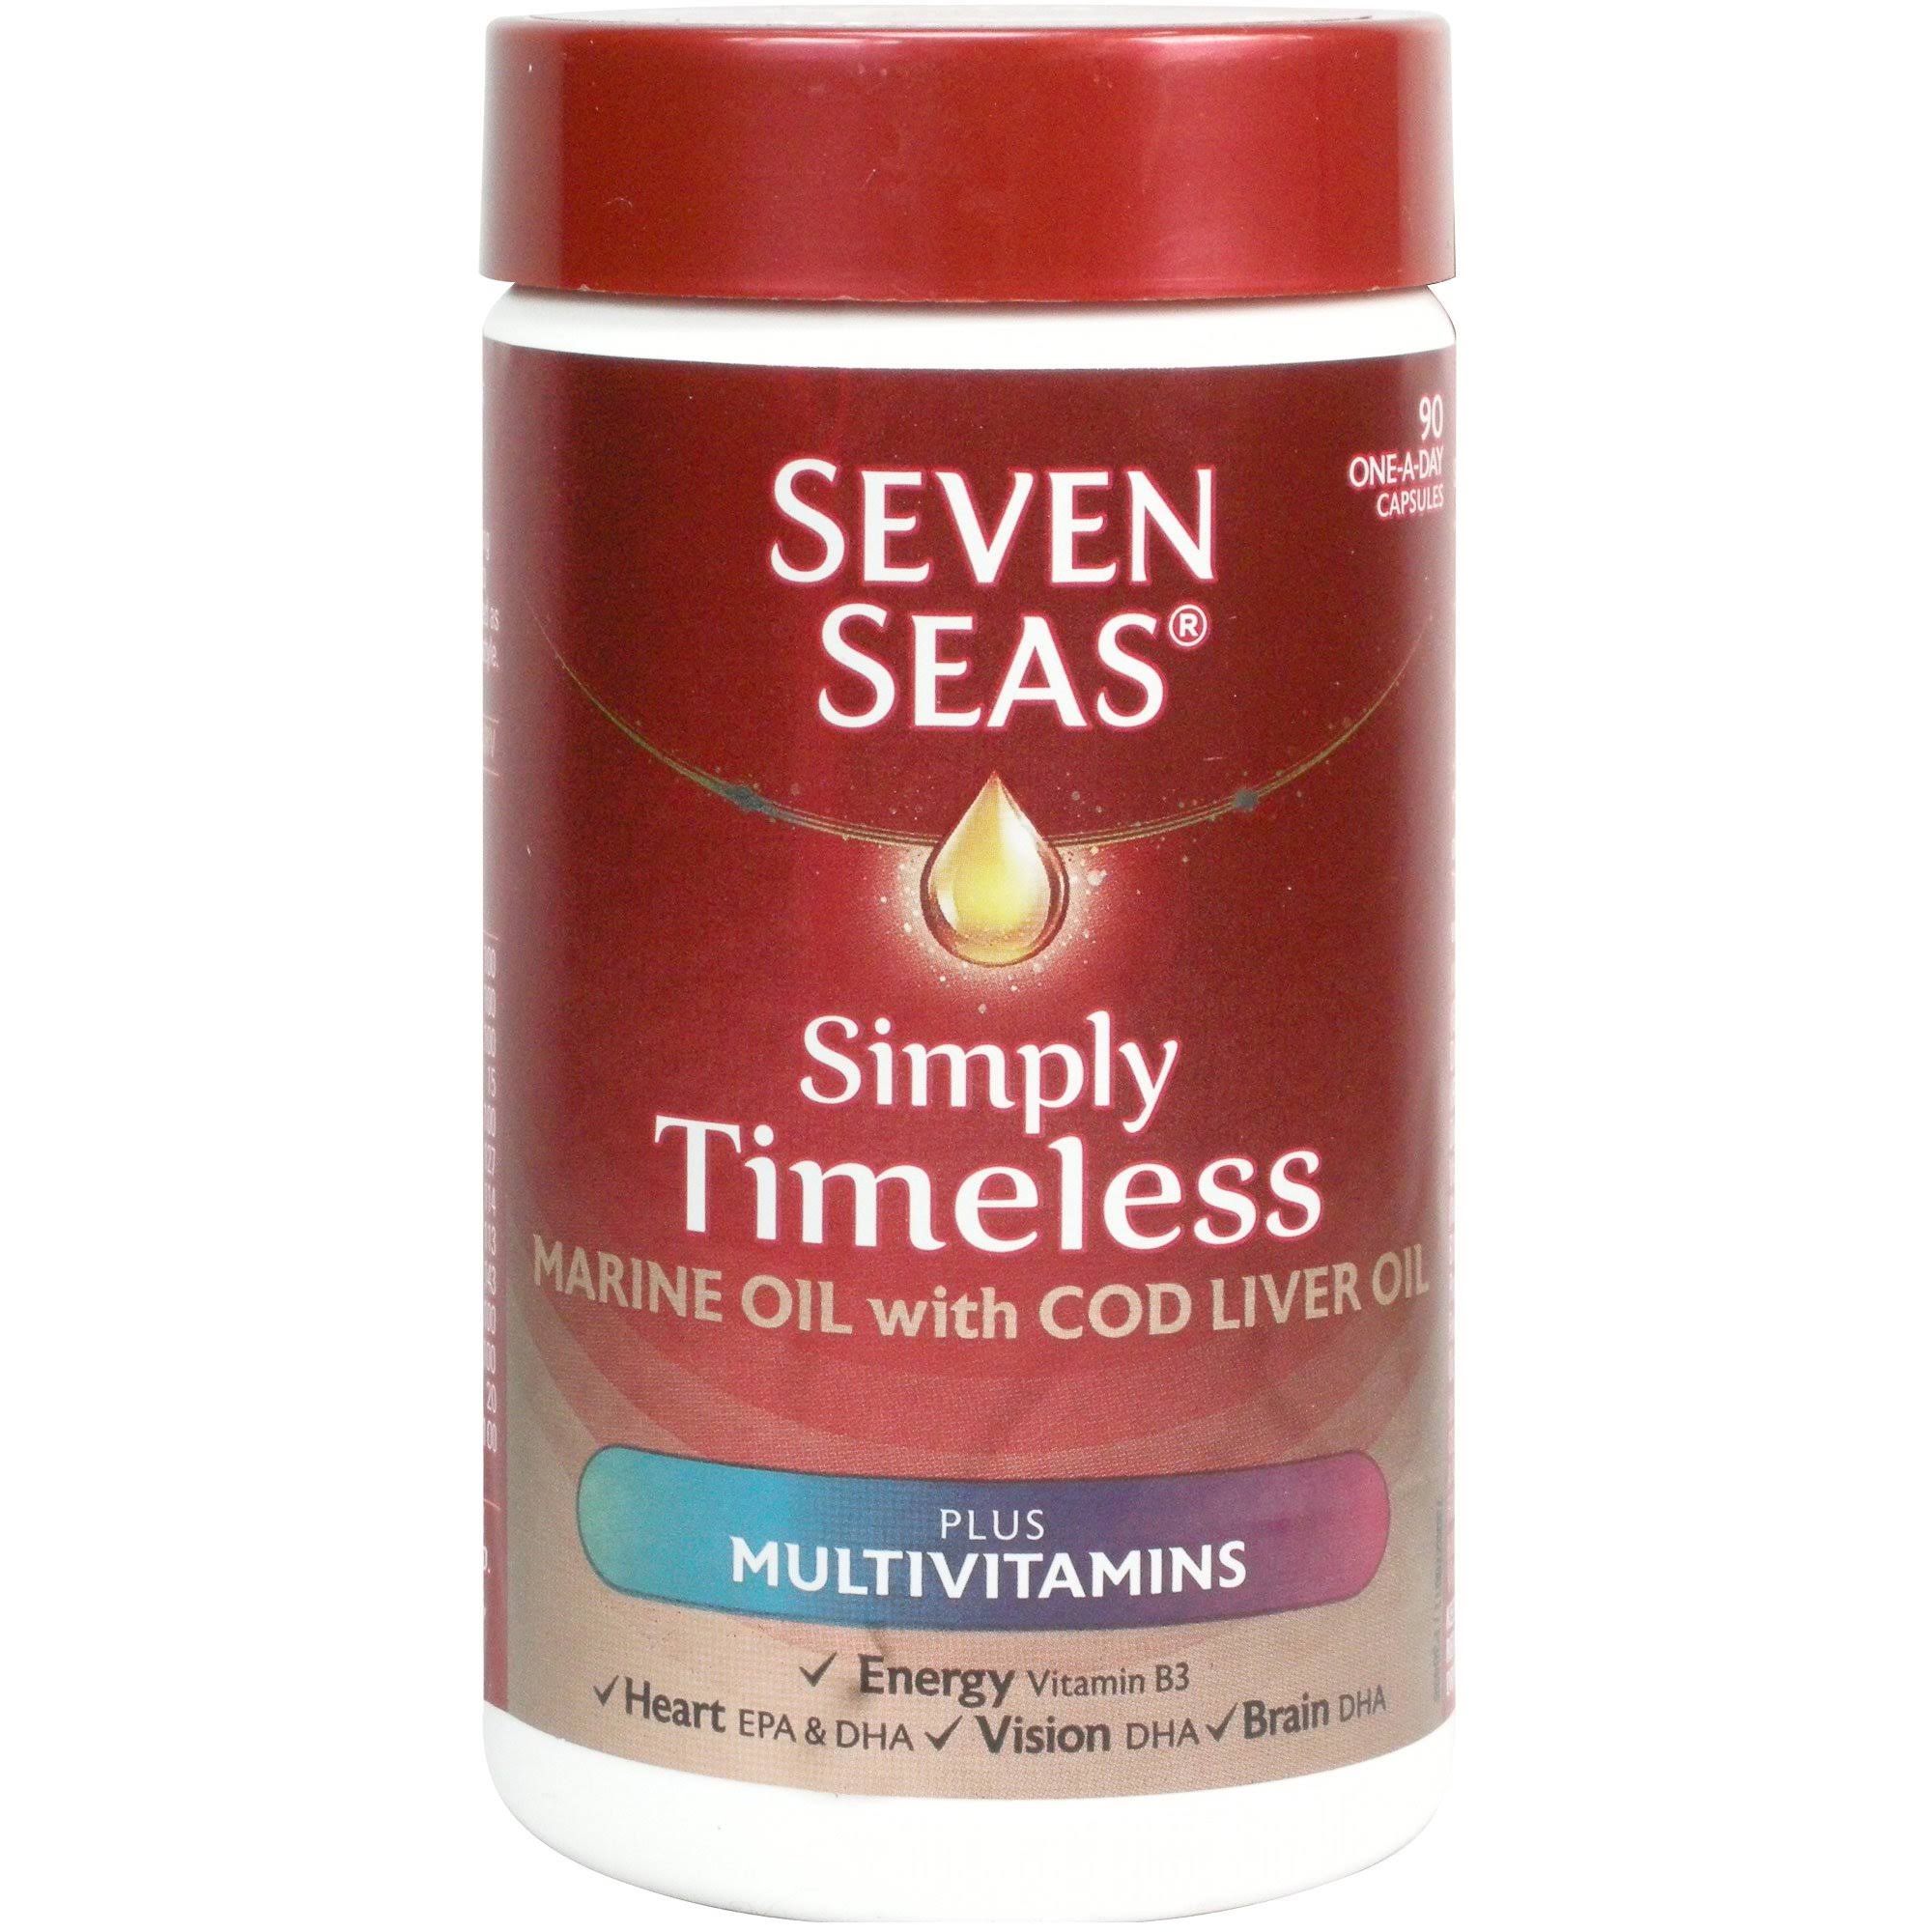 Seven Seas One A Day Pure Cod Liver Oil Capsules - 120ct